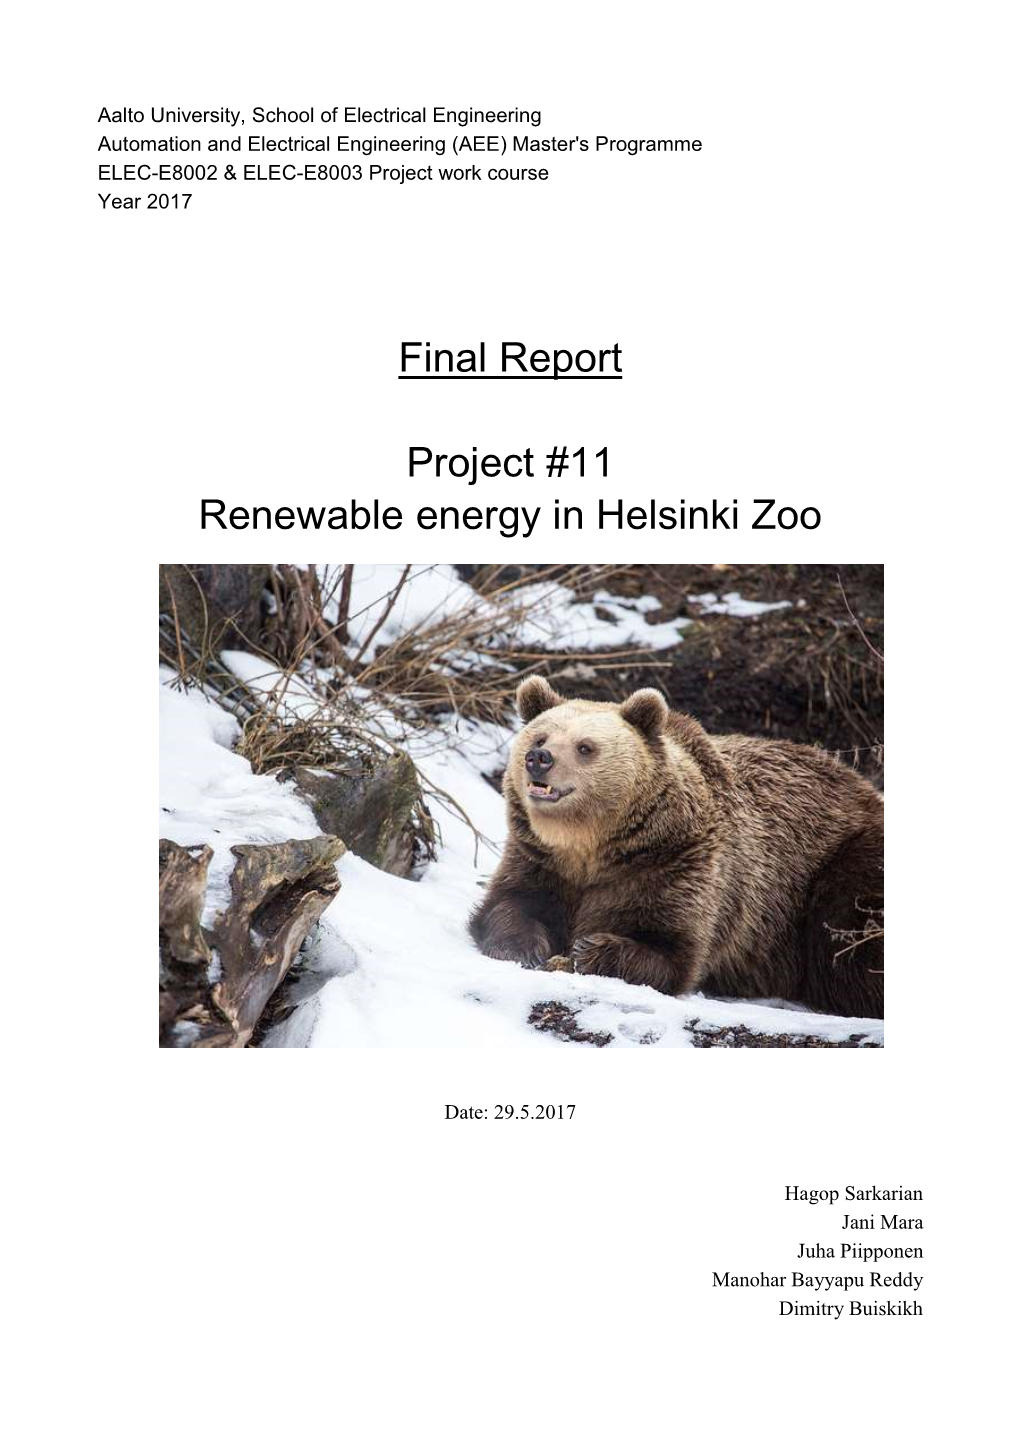 Final Report Project #11 Renewable Energy in Helsinki